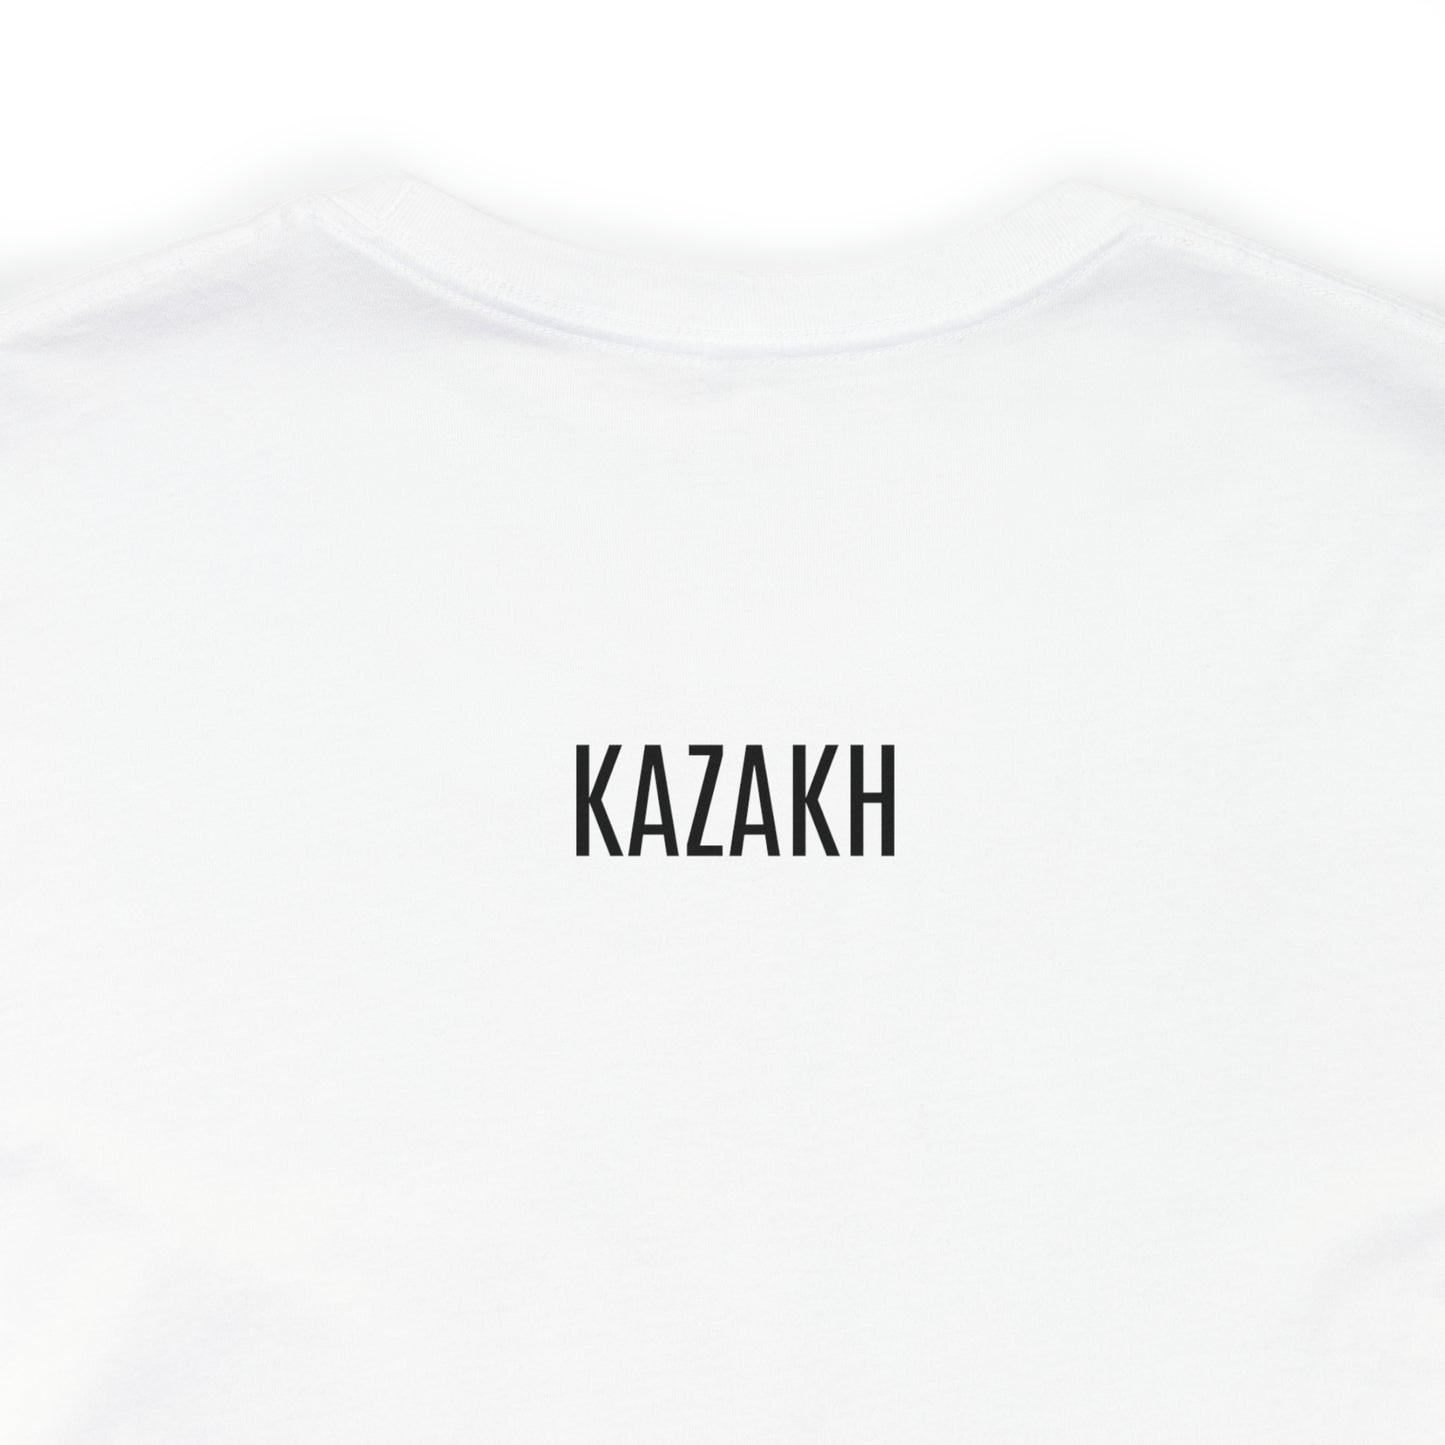 Kobyz Front and Kazakh Back Unisex Jersey Short Sleeve Tee